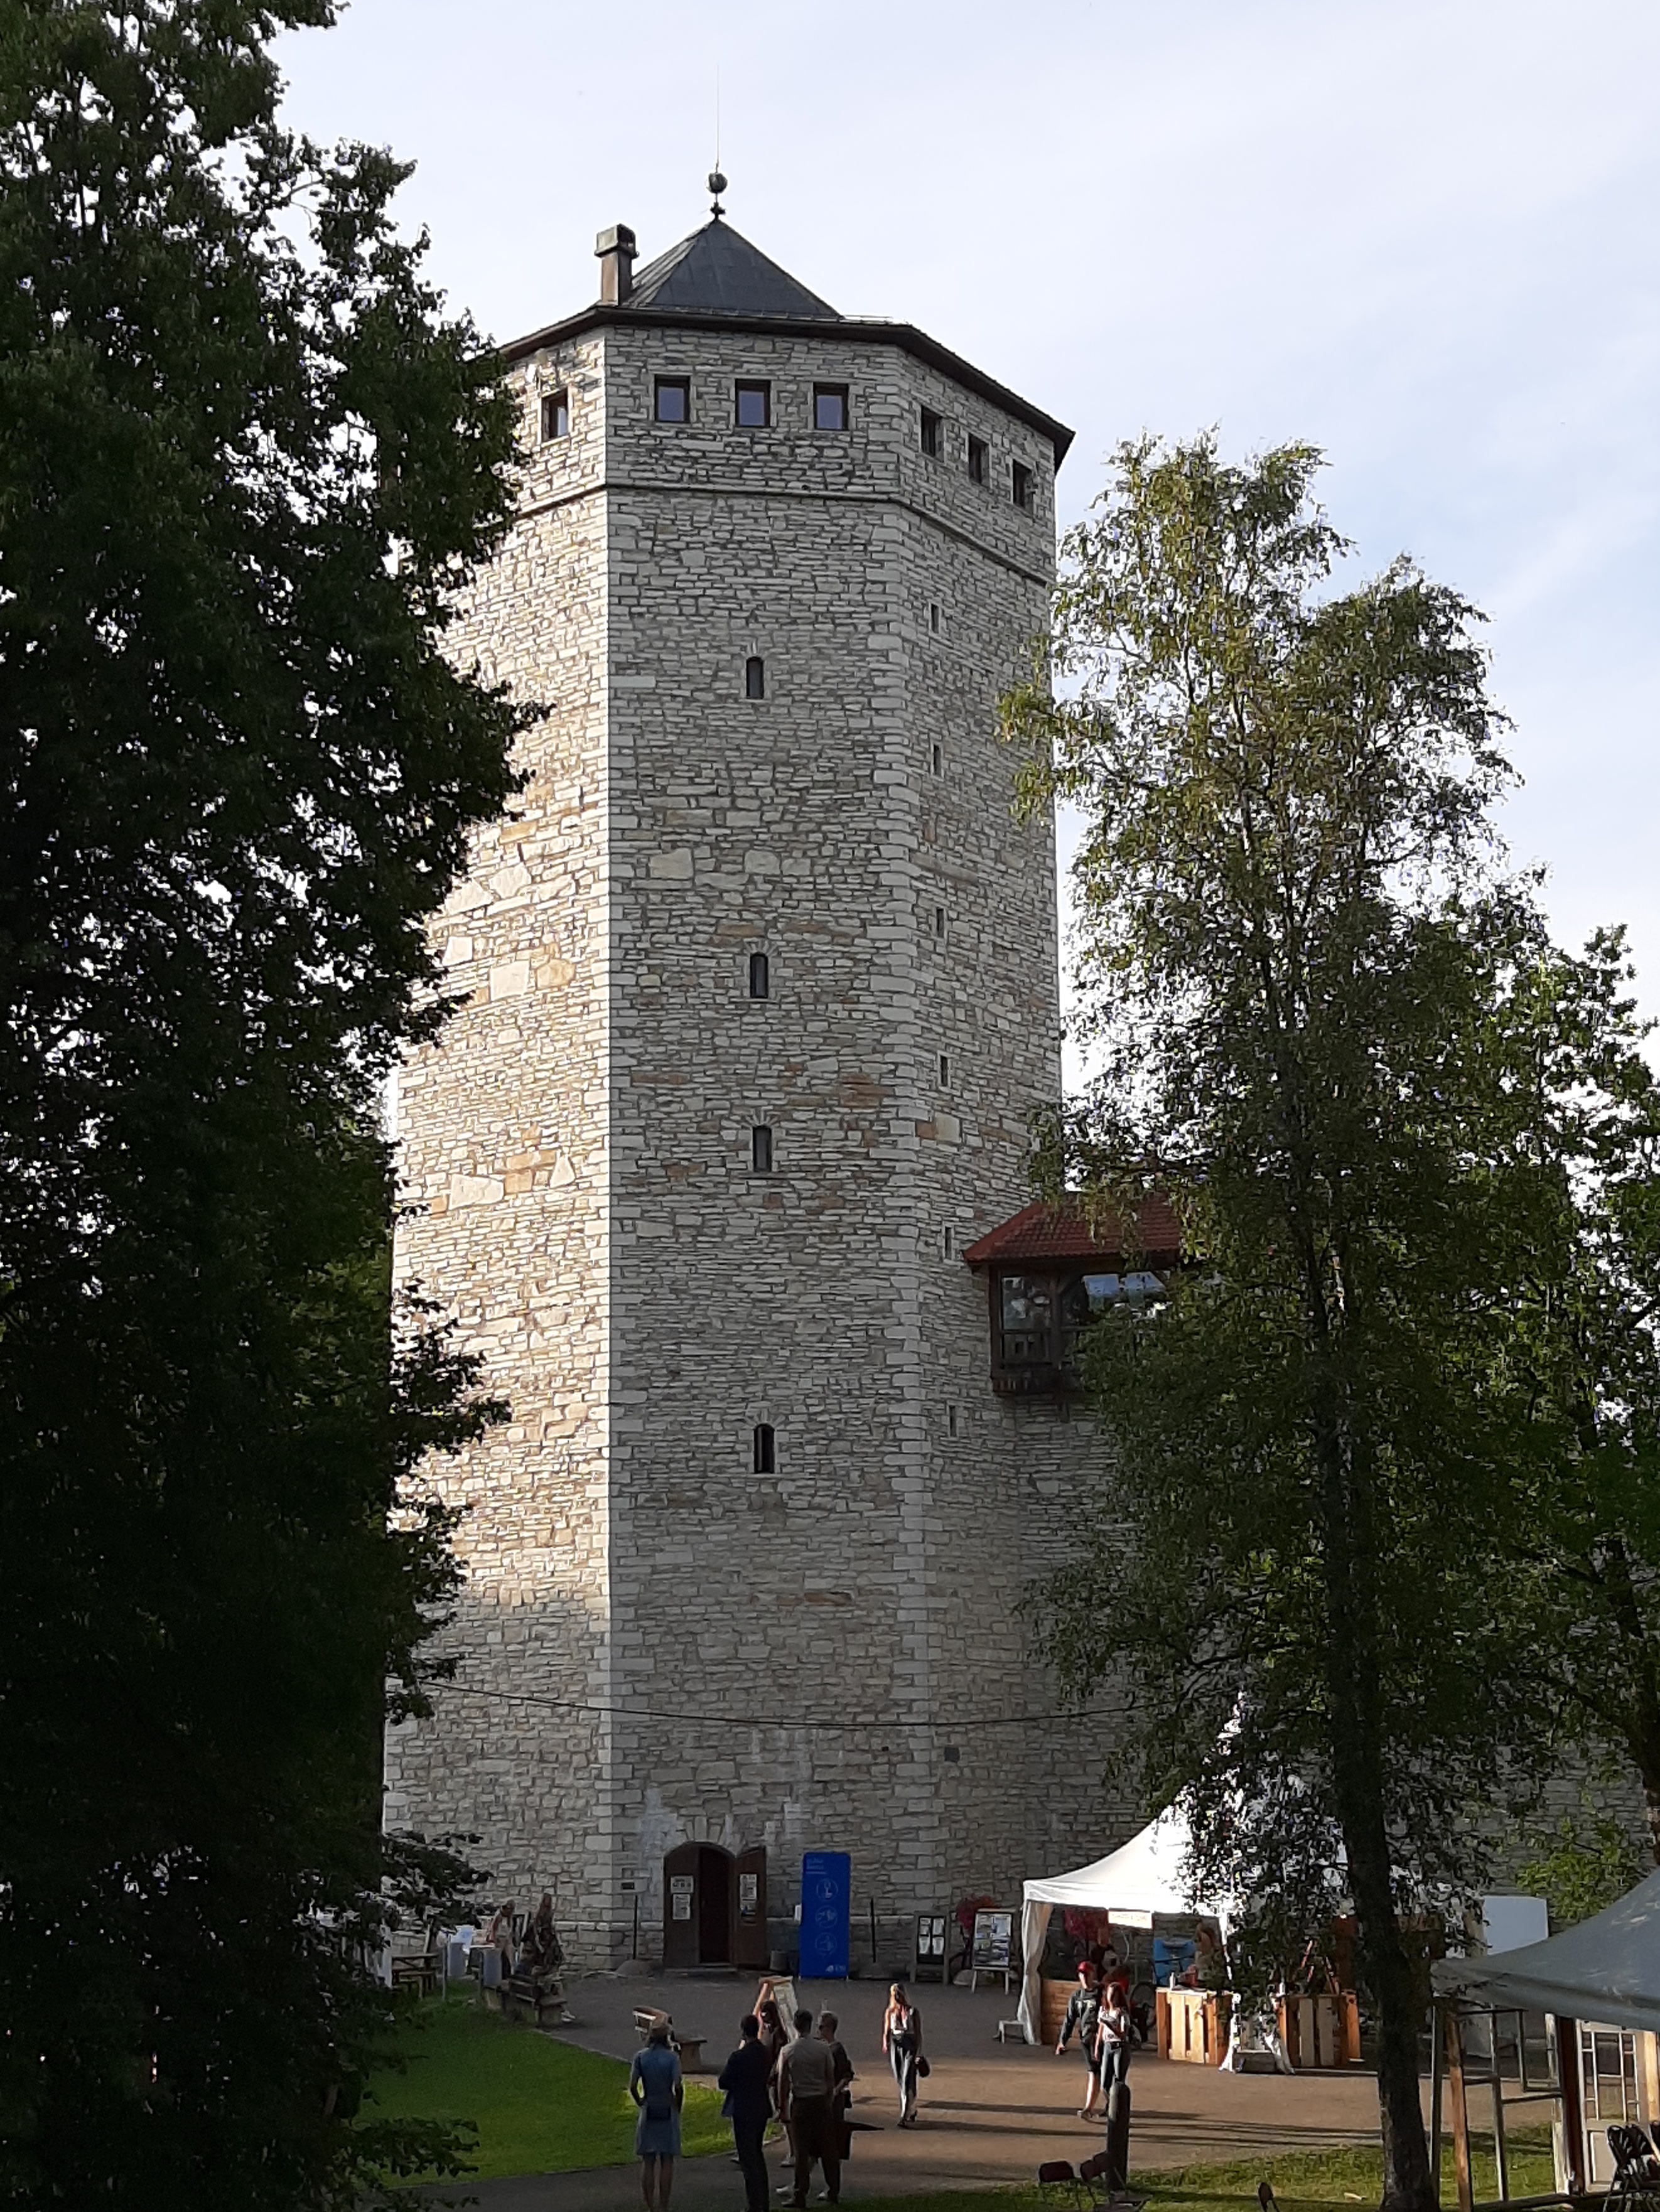 Paide Valli Tower in Järvamaa rephoto